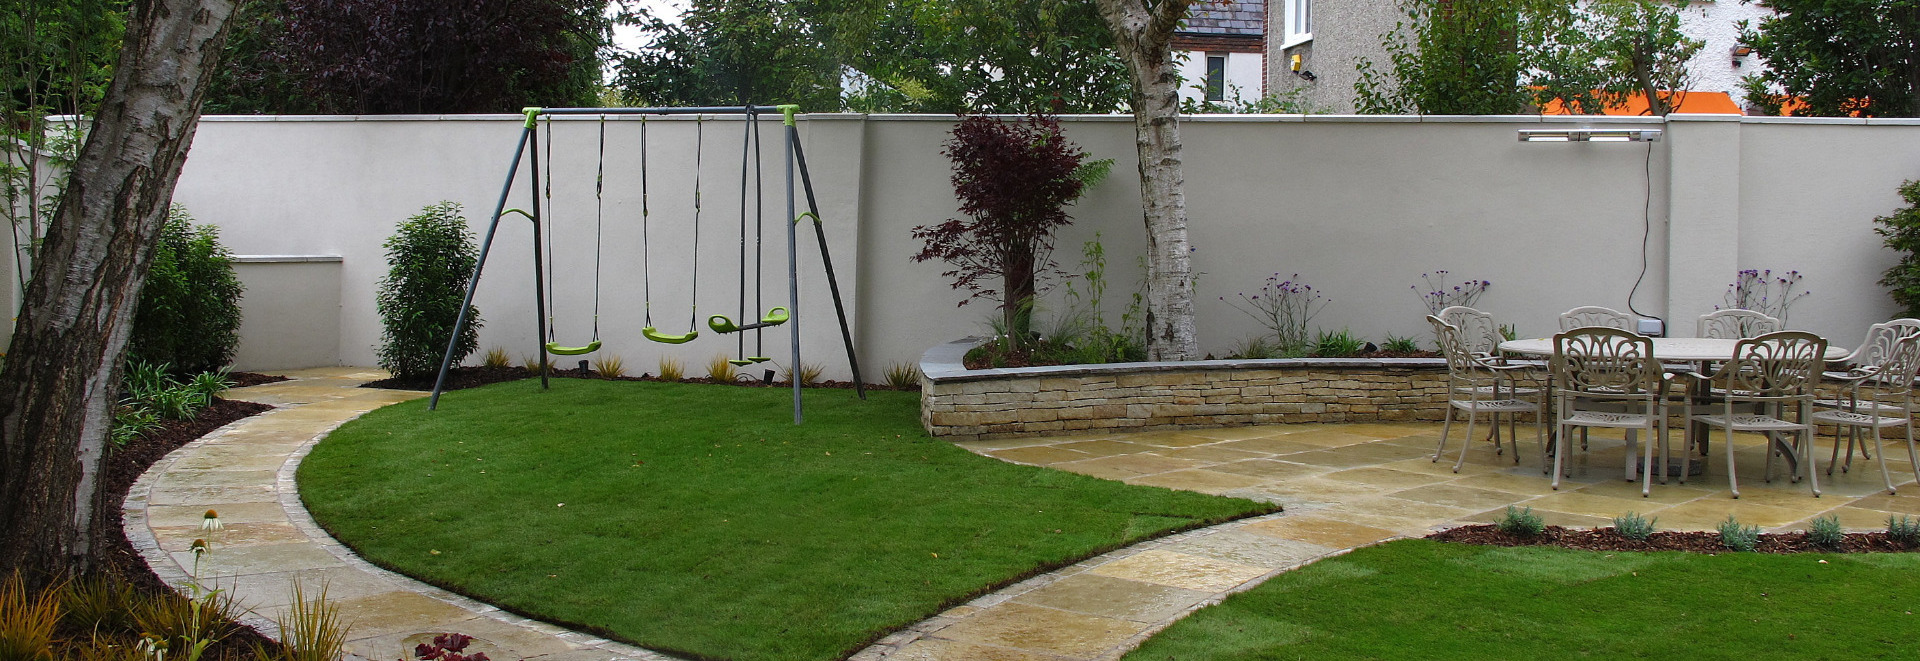 Family Garden Design & Landscaping | Donnybrook, Dublin 4 | Owen Chubb Garden Landscapers